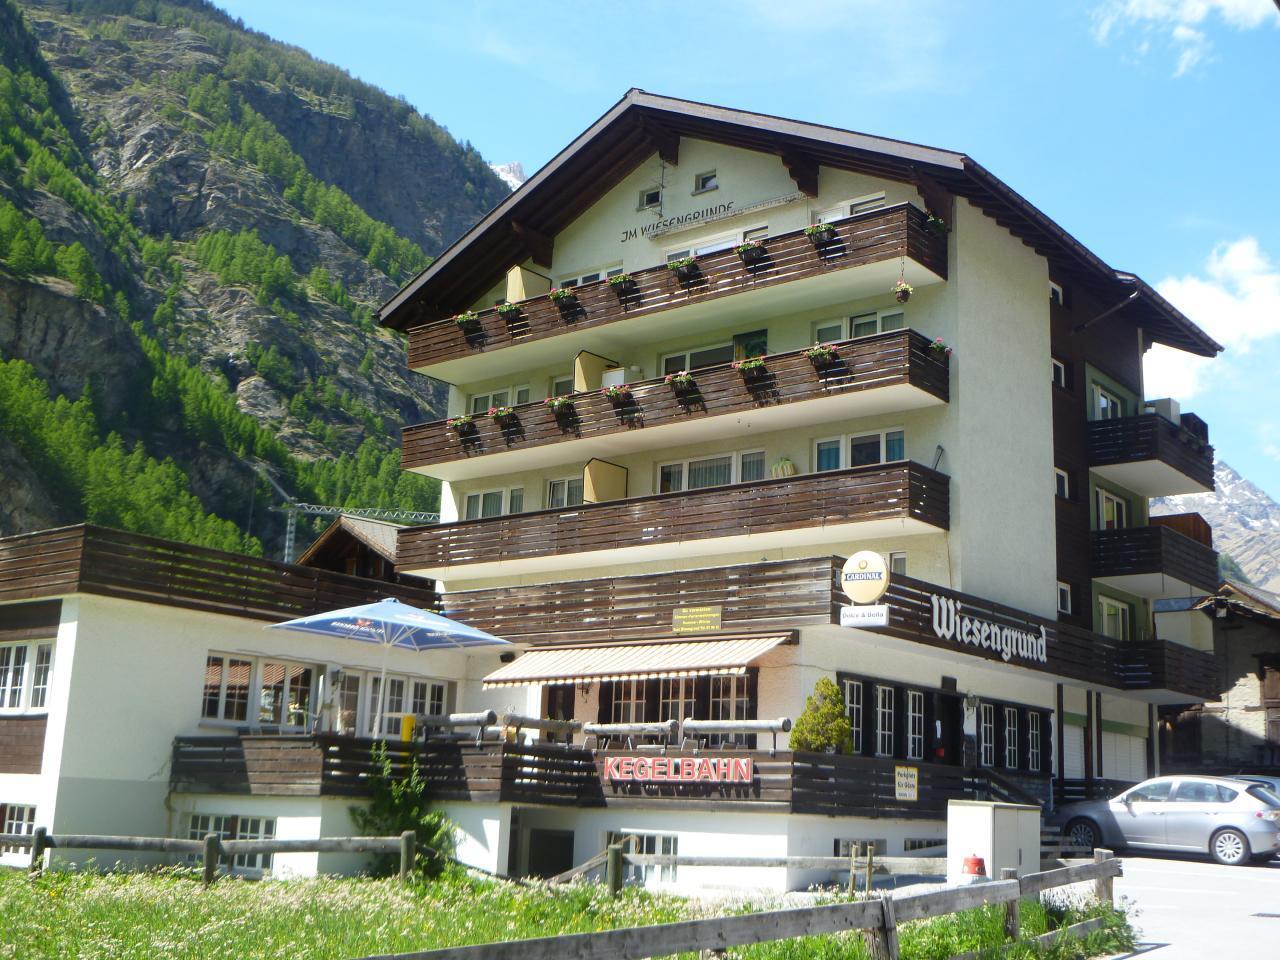 Ferienzuhause mit Aussicht / Täsch bei Zermat Ferienwohnung in der Schweiz